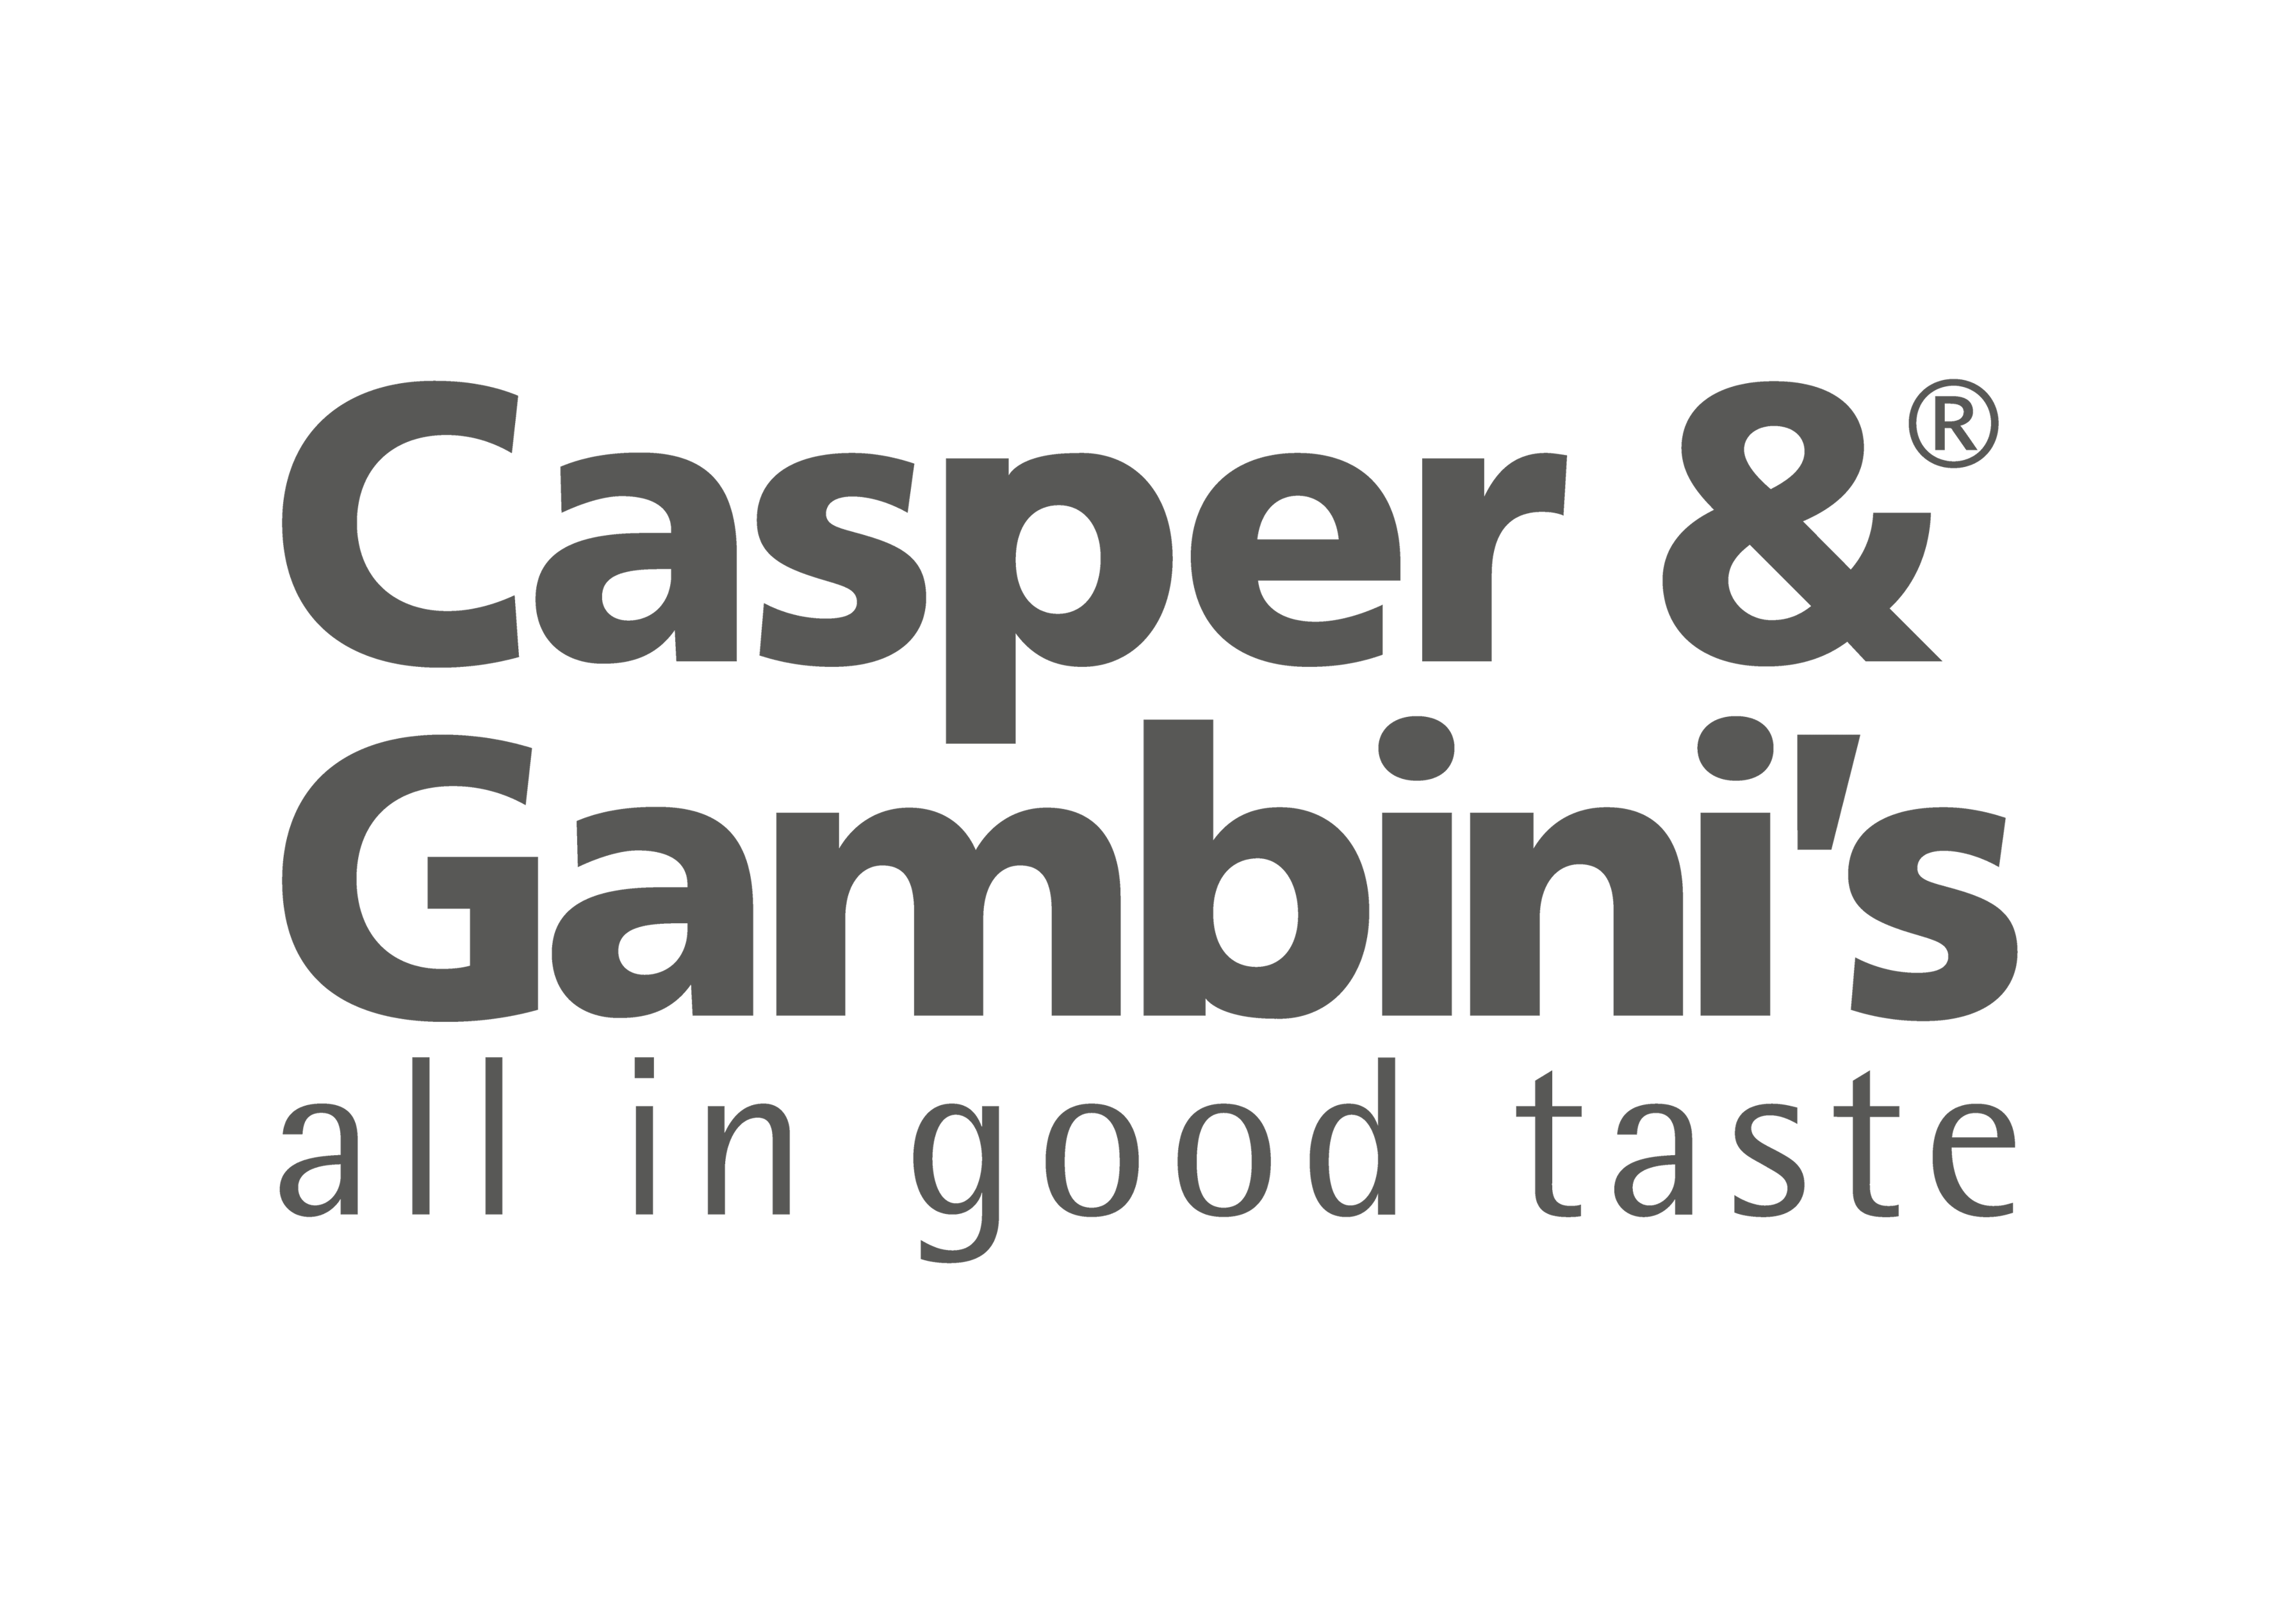 Casper And Gambinis